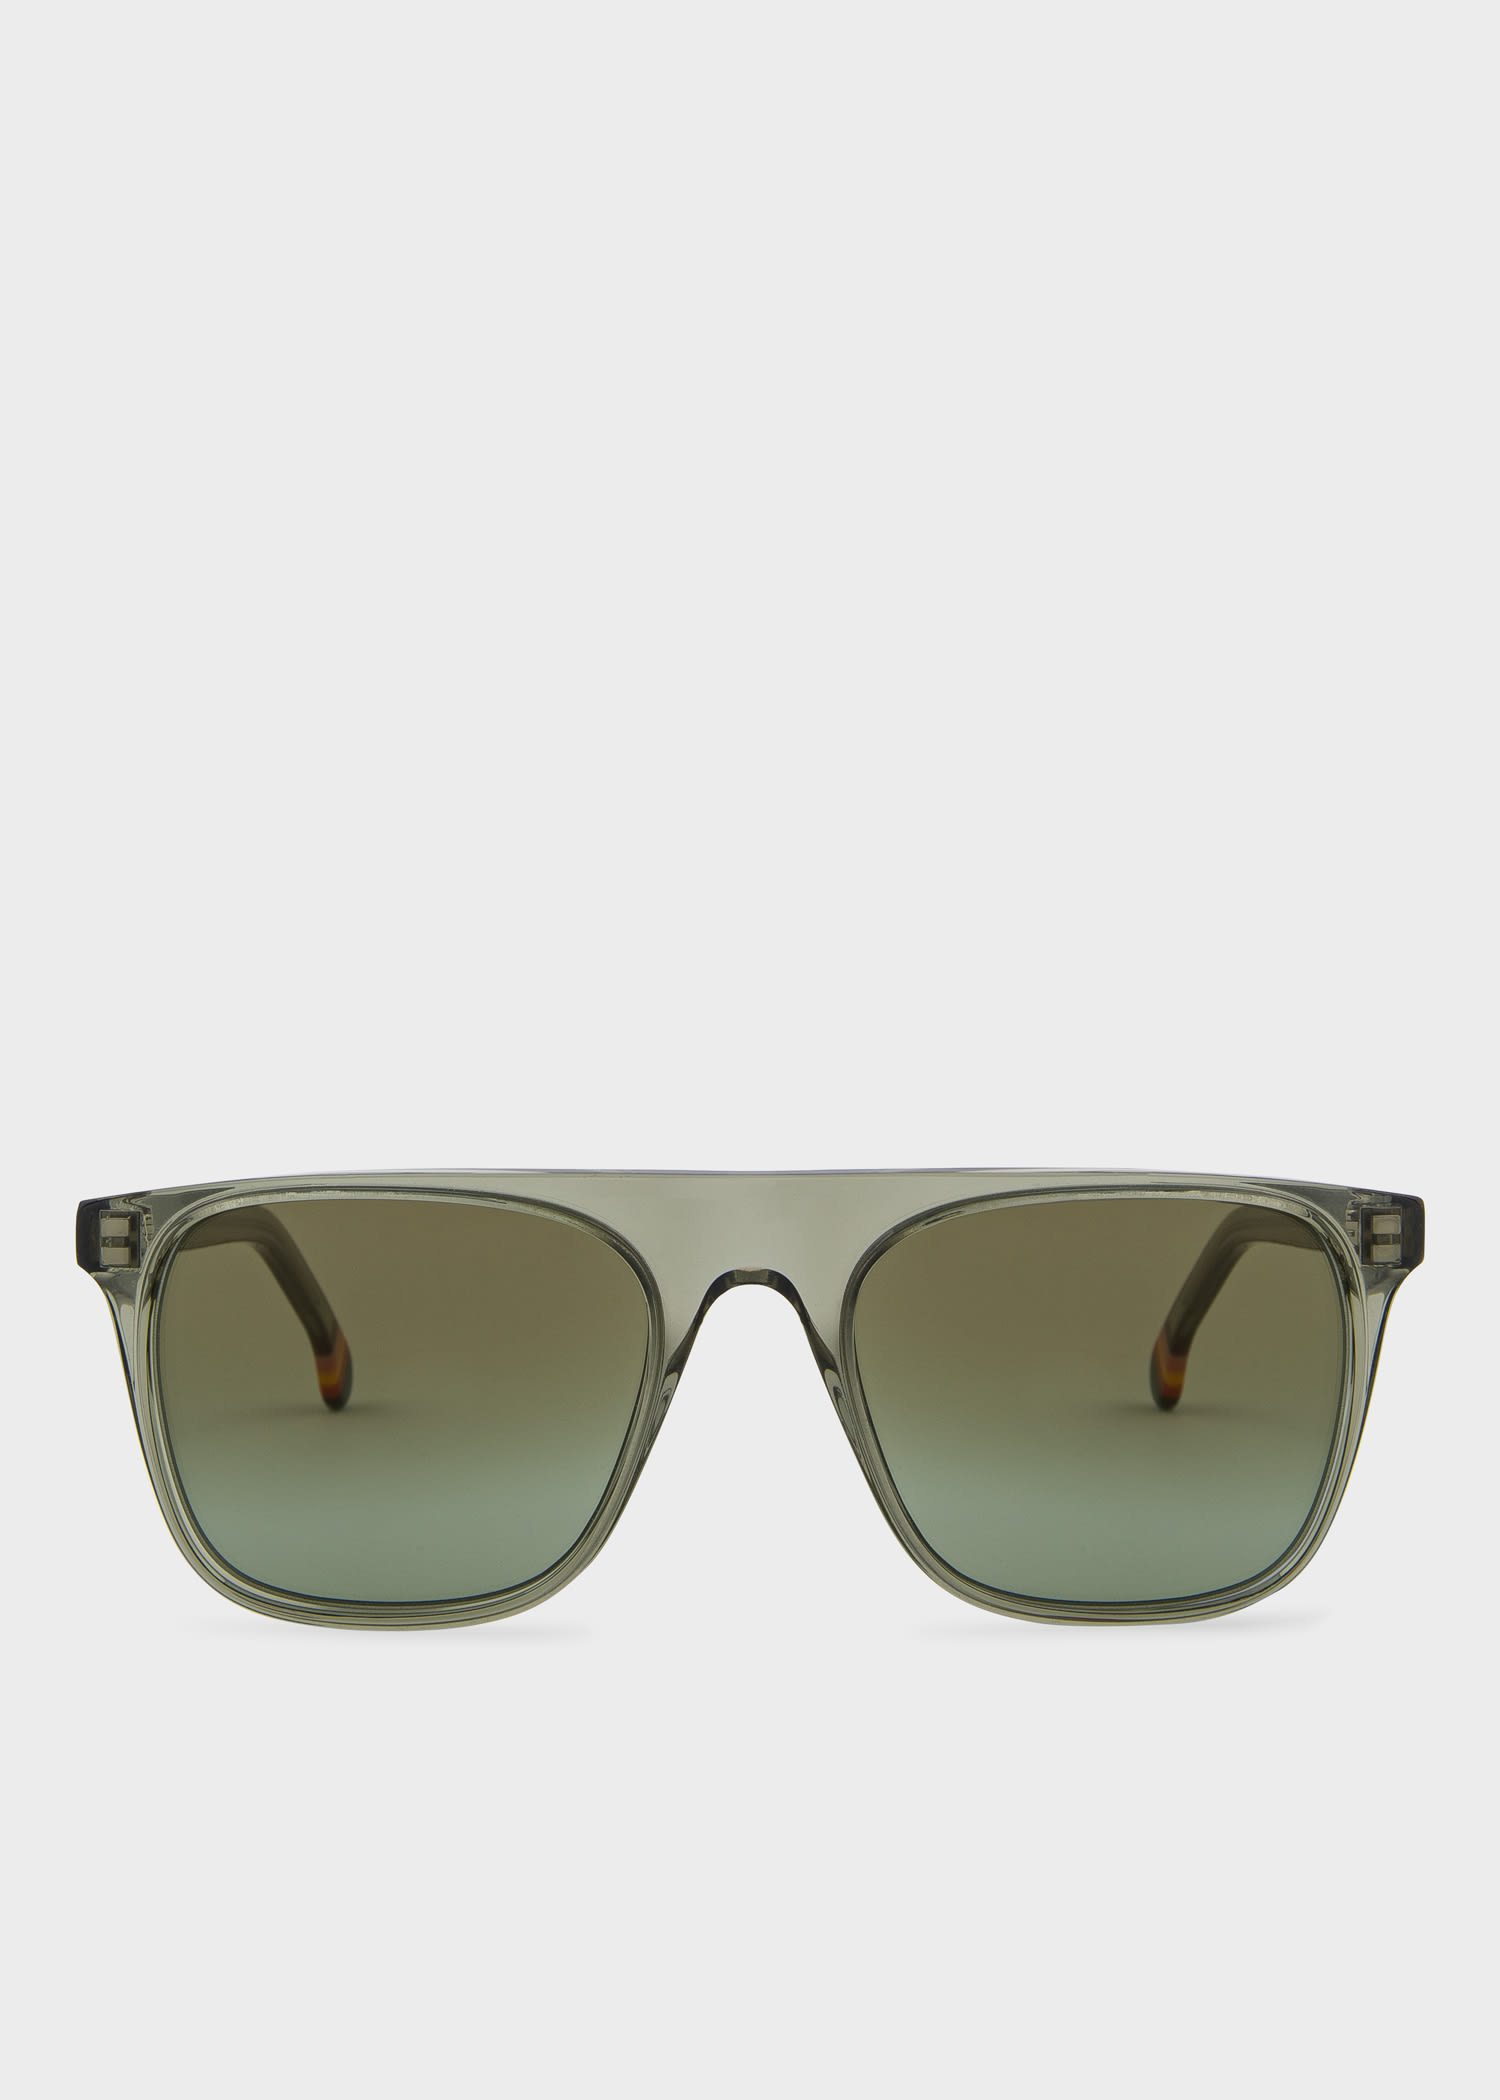 Designer Men's & Women's Glasses & Sunglasses - Paul Smith US